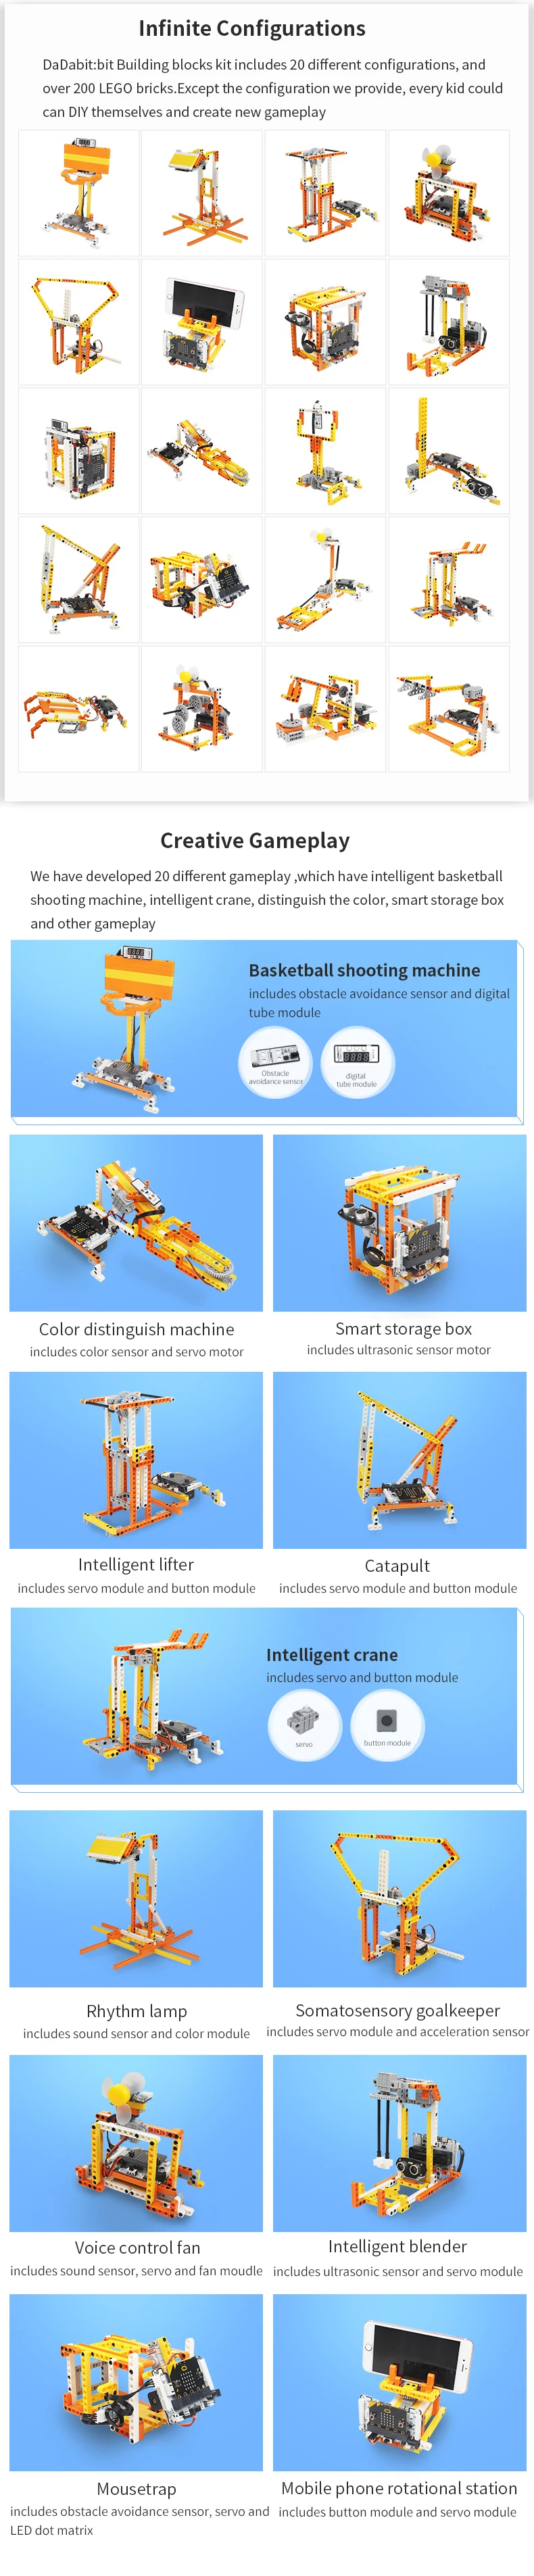 Hiwonder DaDa: бит DIY строительные блоки набор с 200+ конструкционные детали для строительных изобретений